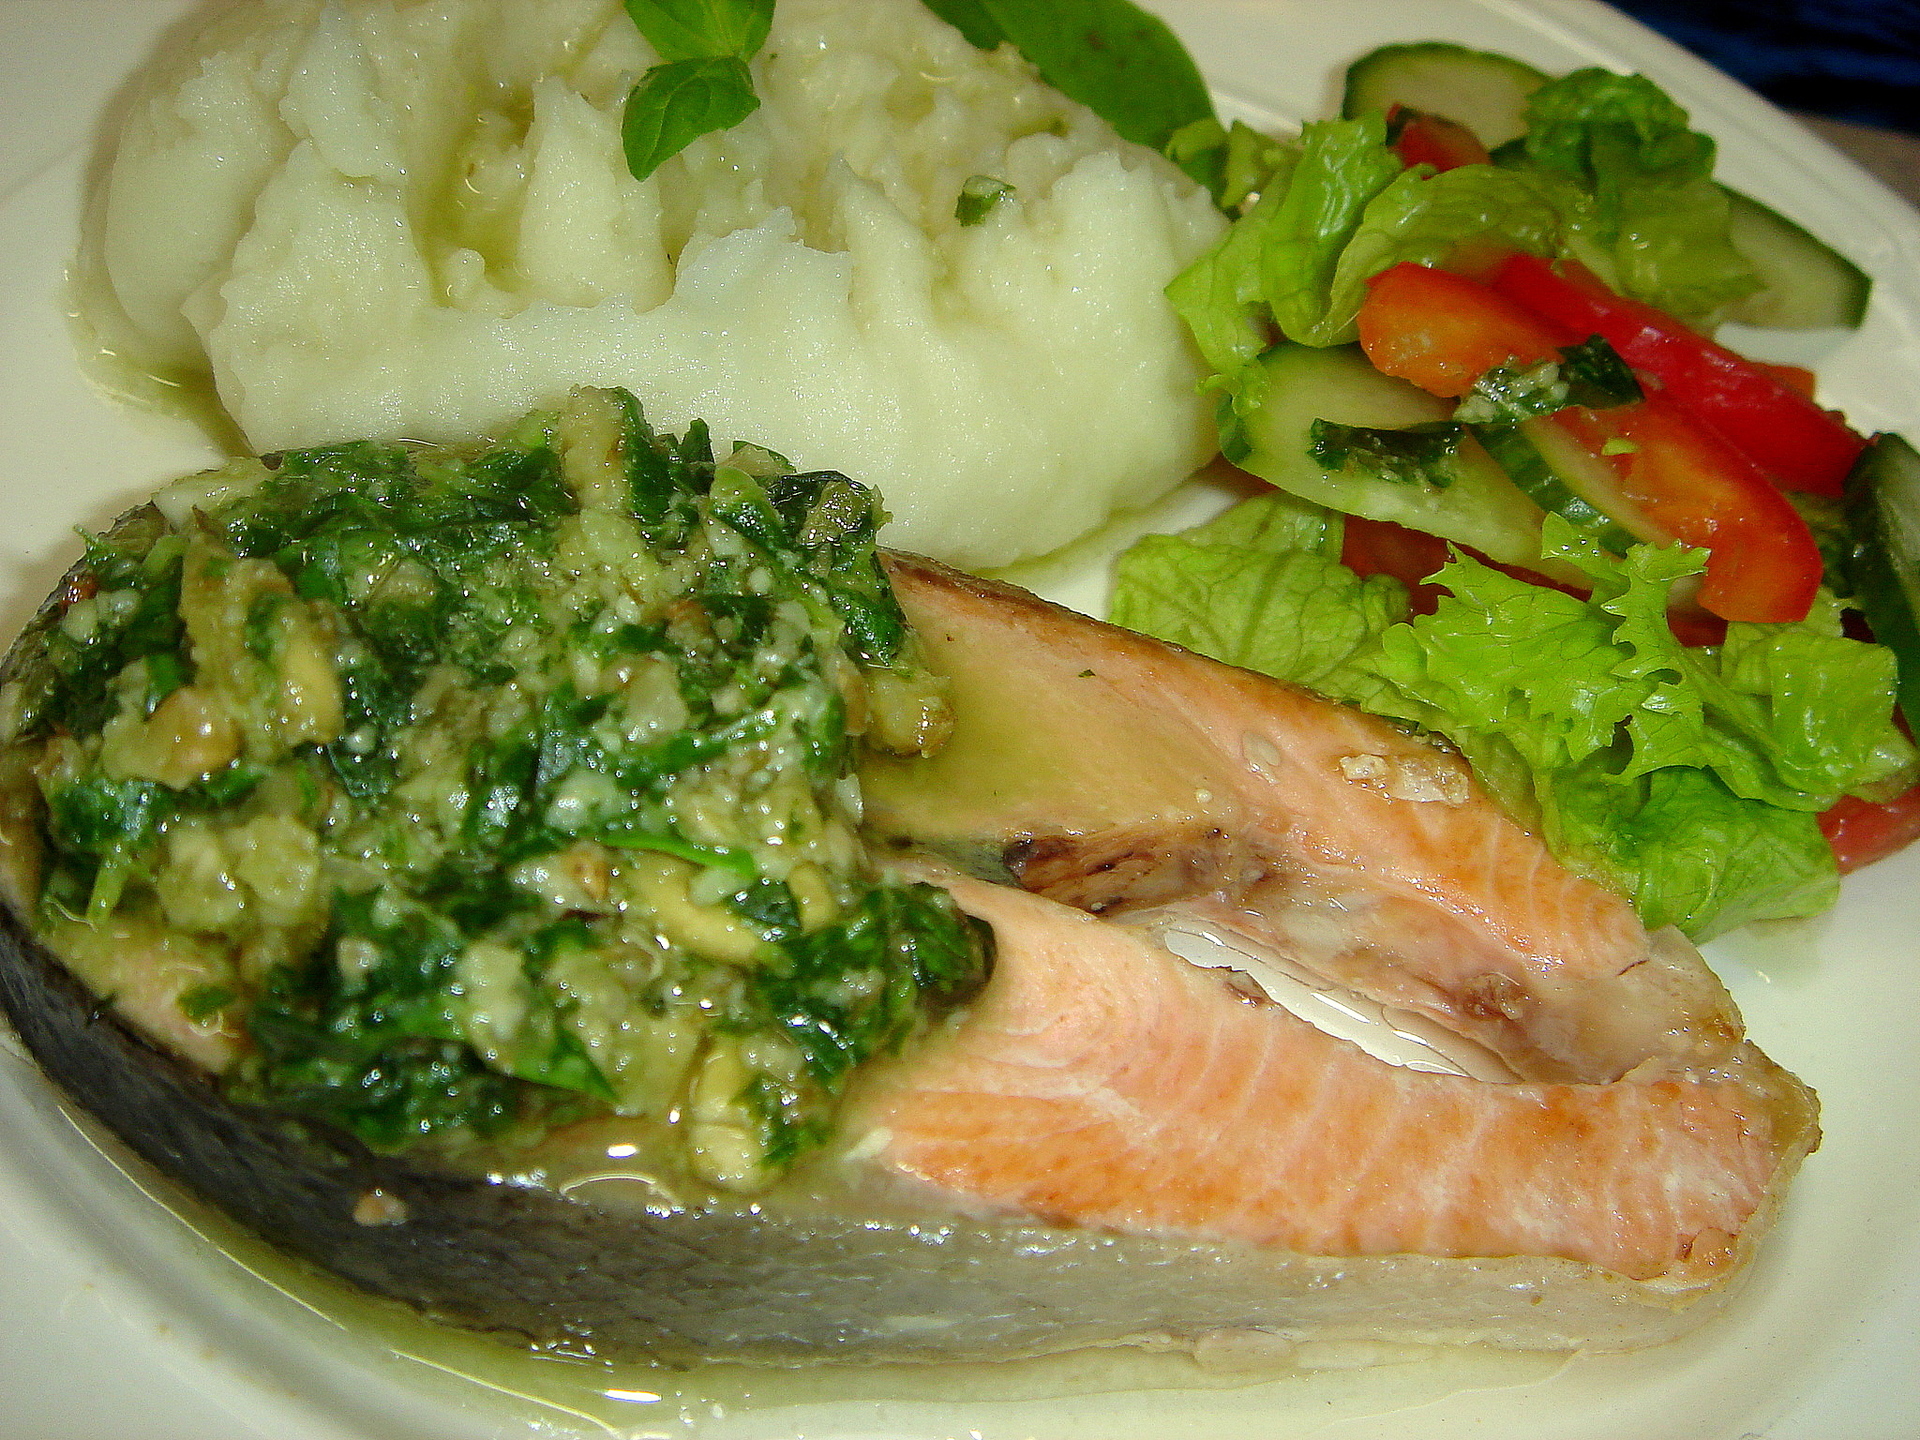 Фото к рецепту: Рыба салмон в базиликовом соусе